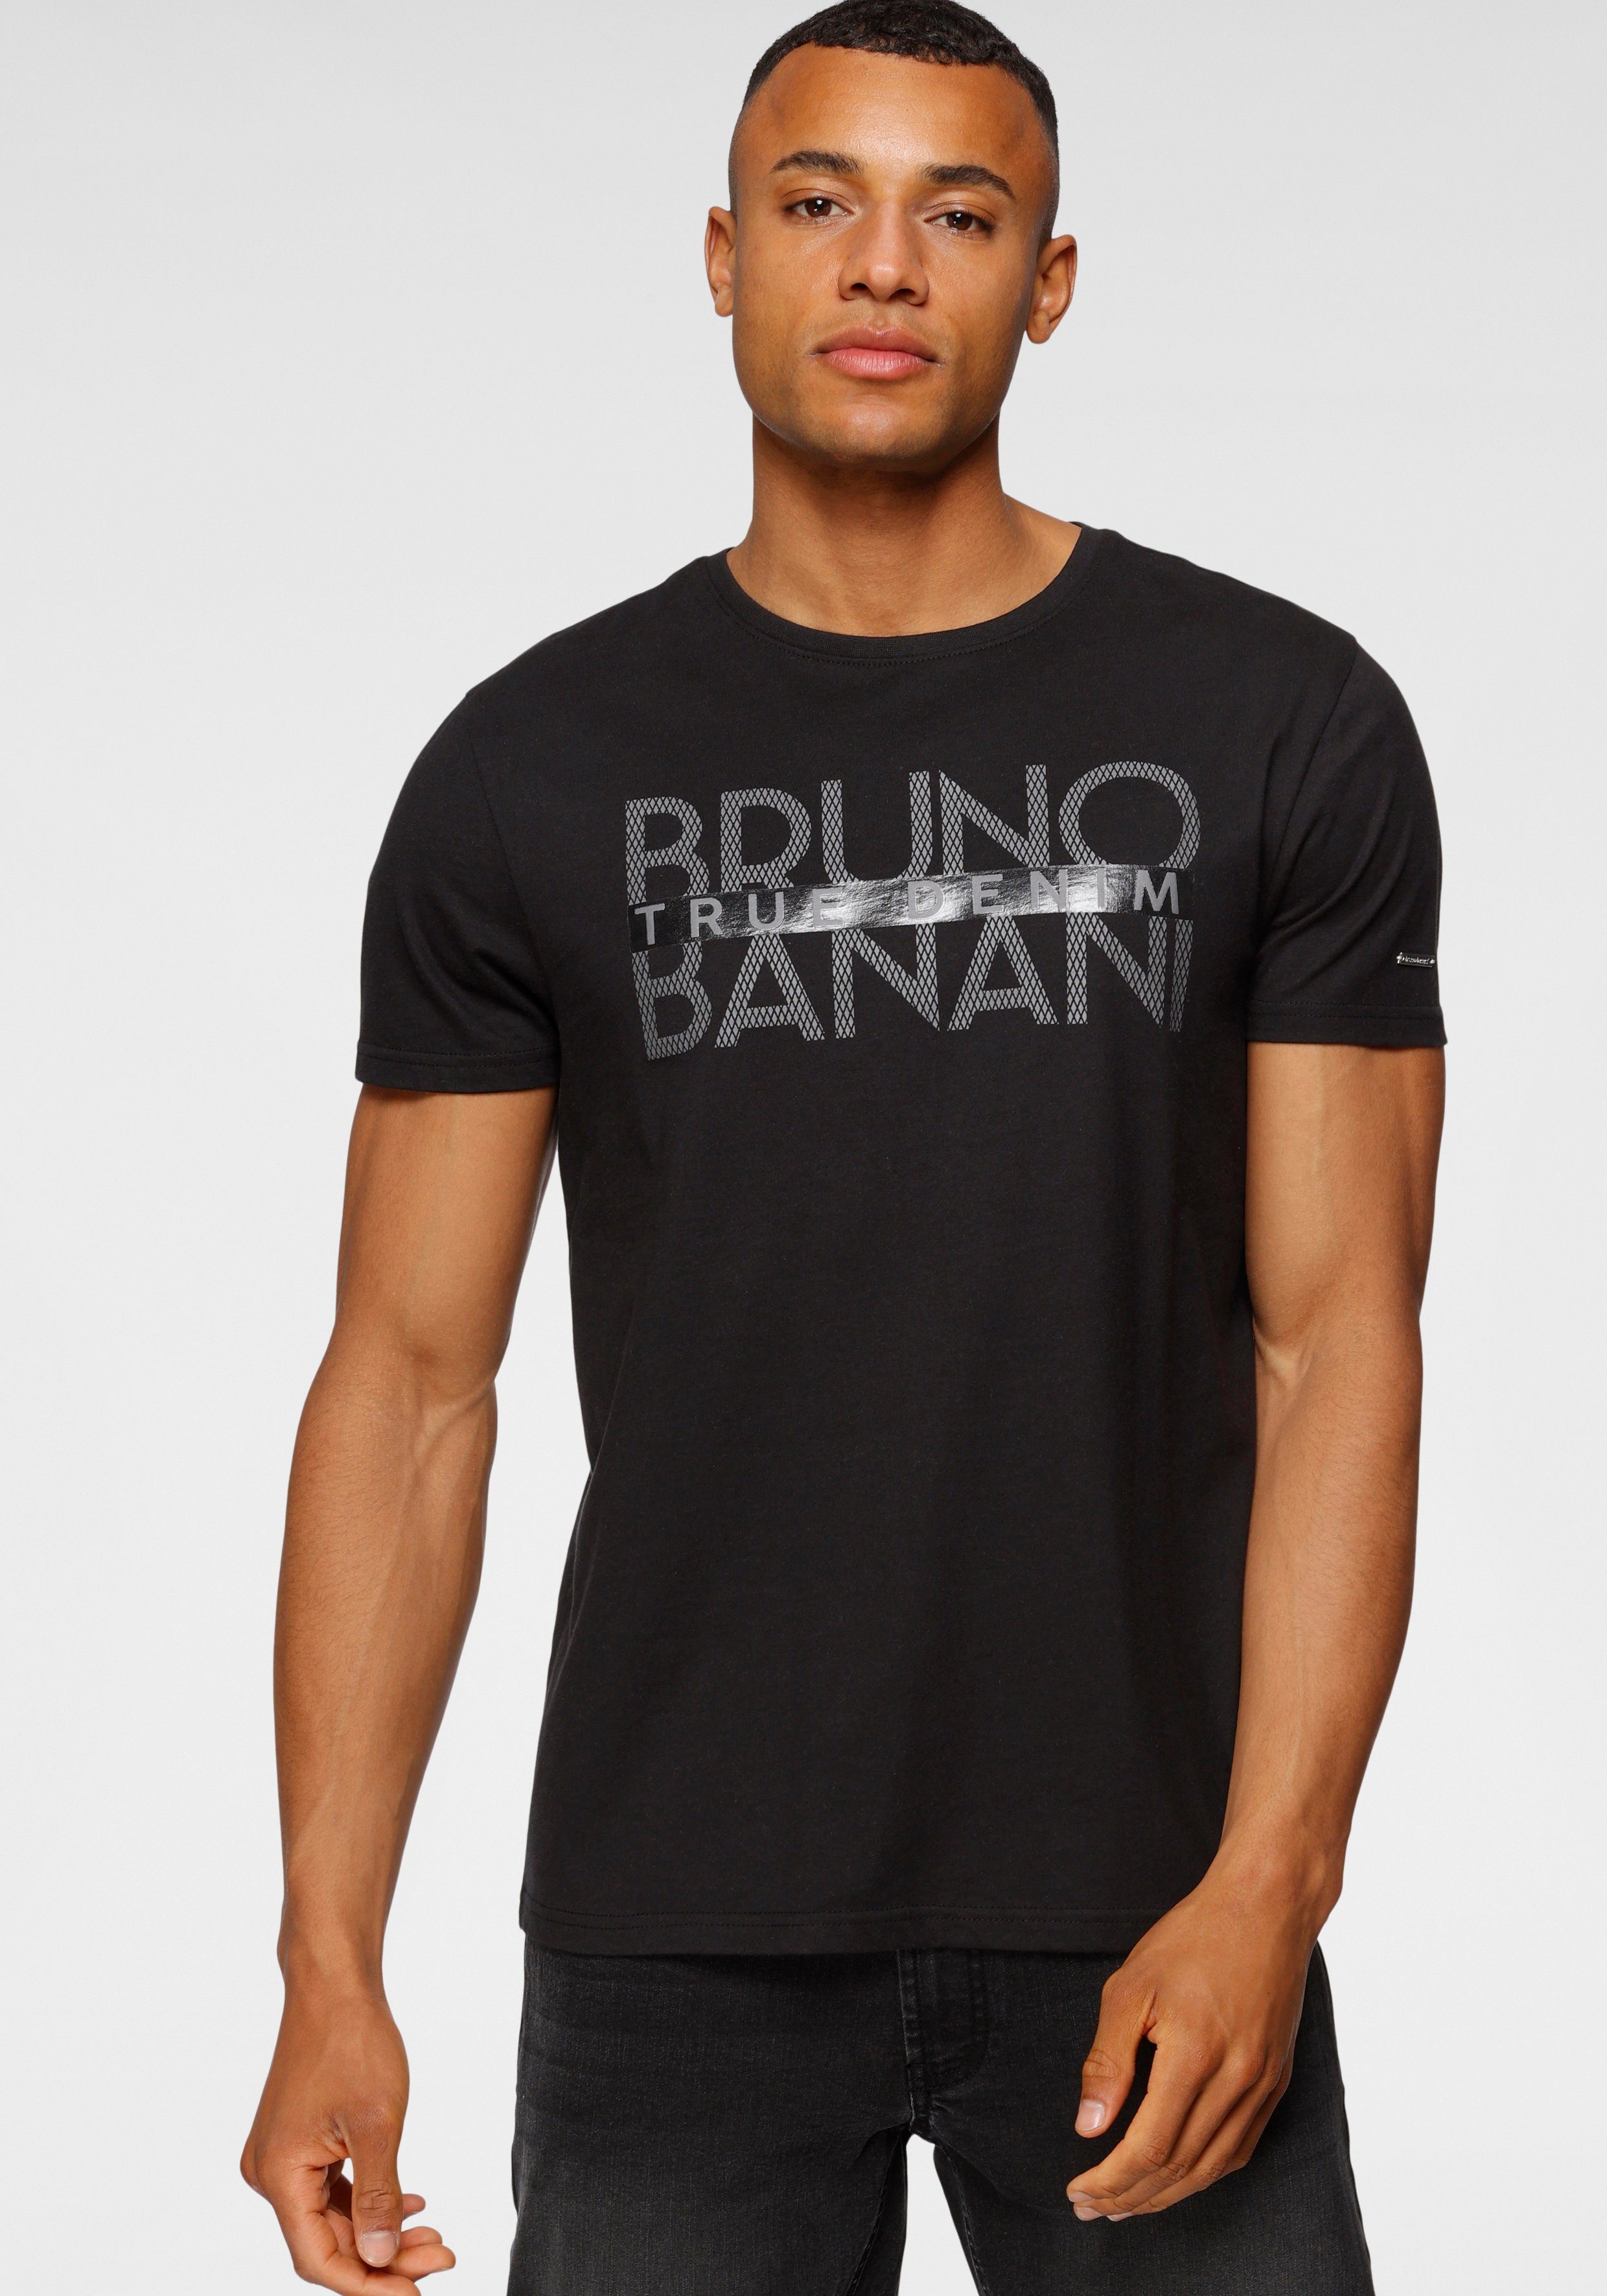 Banani mit T-Shirt schwarz Print glänzendem Bruno